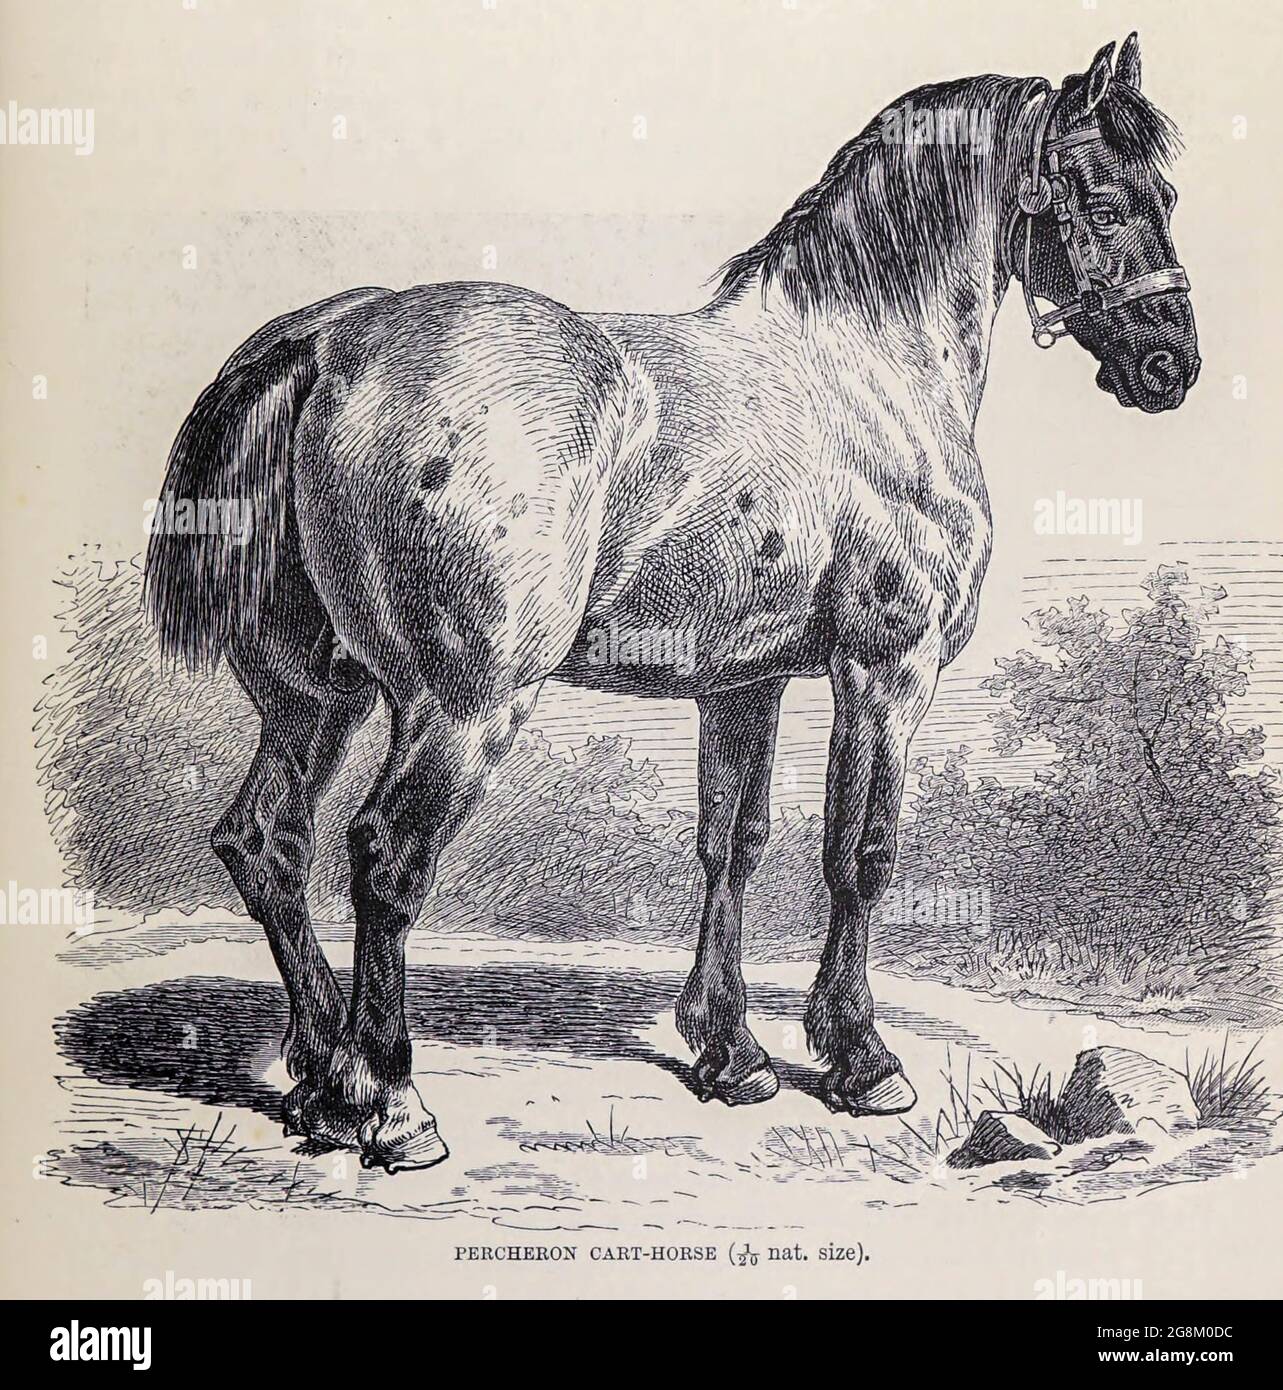 Le Percheron est une race de cheval à tirant d'eau originaire de la vallée de la rivière Huisne, dans l'ouest de la France, une partie de l'ancienne province de Perche dont la race tire son nom. Habituellement de couleur grise ou noire, les Percherons sont bien musclés, et connus pour leur intelligence et leur volonté de travailler. Extrait du livre « Royal Natural History » Volume 2 édité par Richard Lydekker, publié à Londres par Frederick Warne & Co en 1893-1894 Banque D'Images